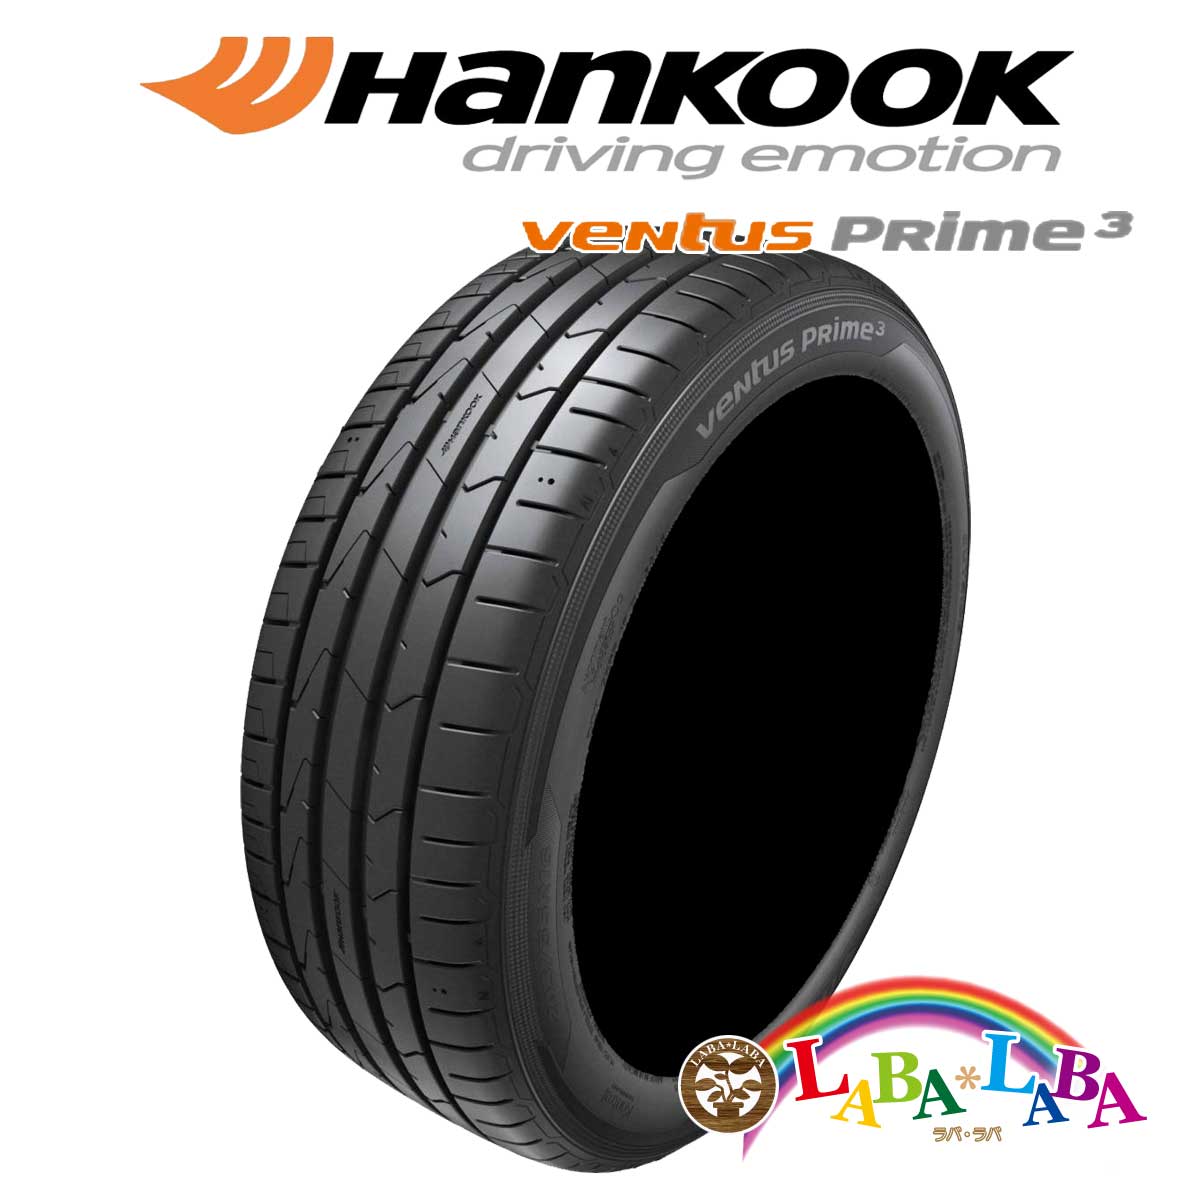 HANKOOK ハンコック VENTUS PRIME3 ベンタス K125 165/45R16 74V XL サマータイヤ 4本セット